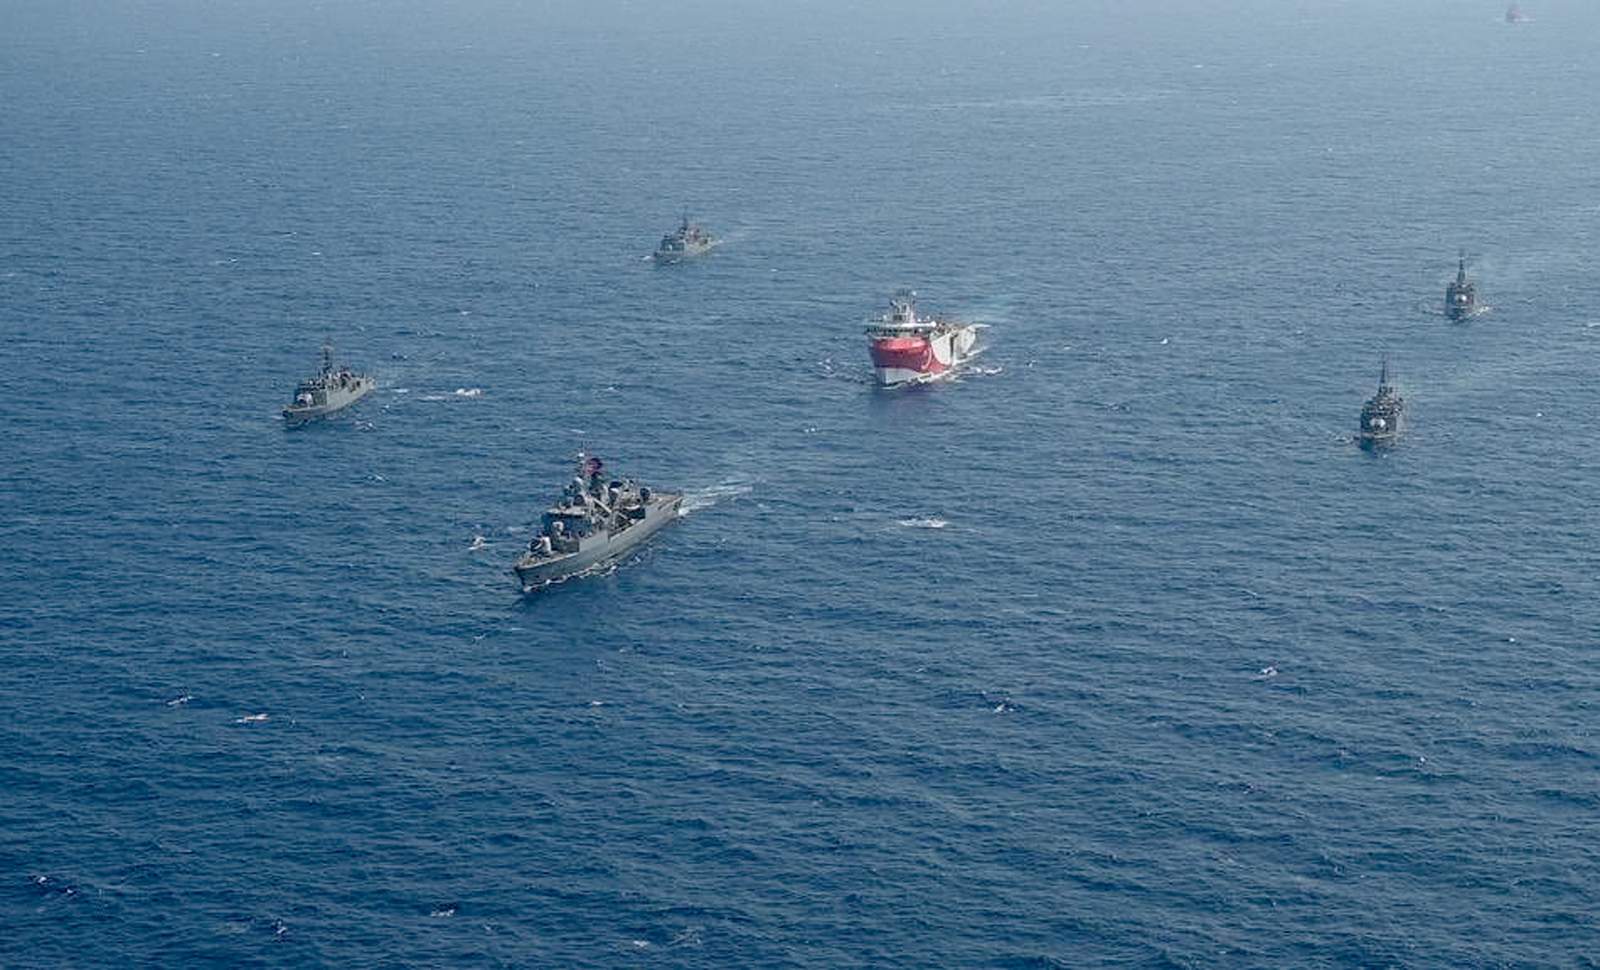 Greece plans Mediterranean navy exercises; Turkey objects